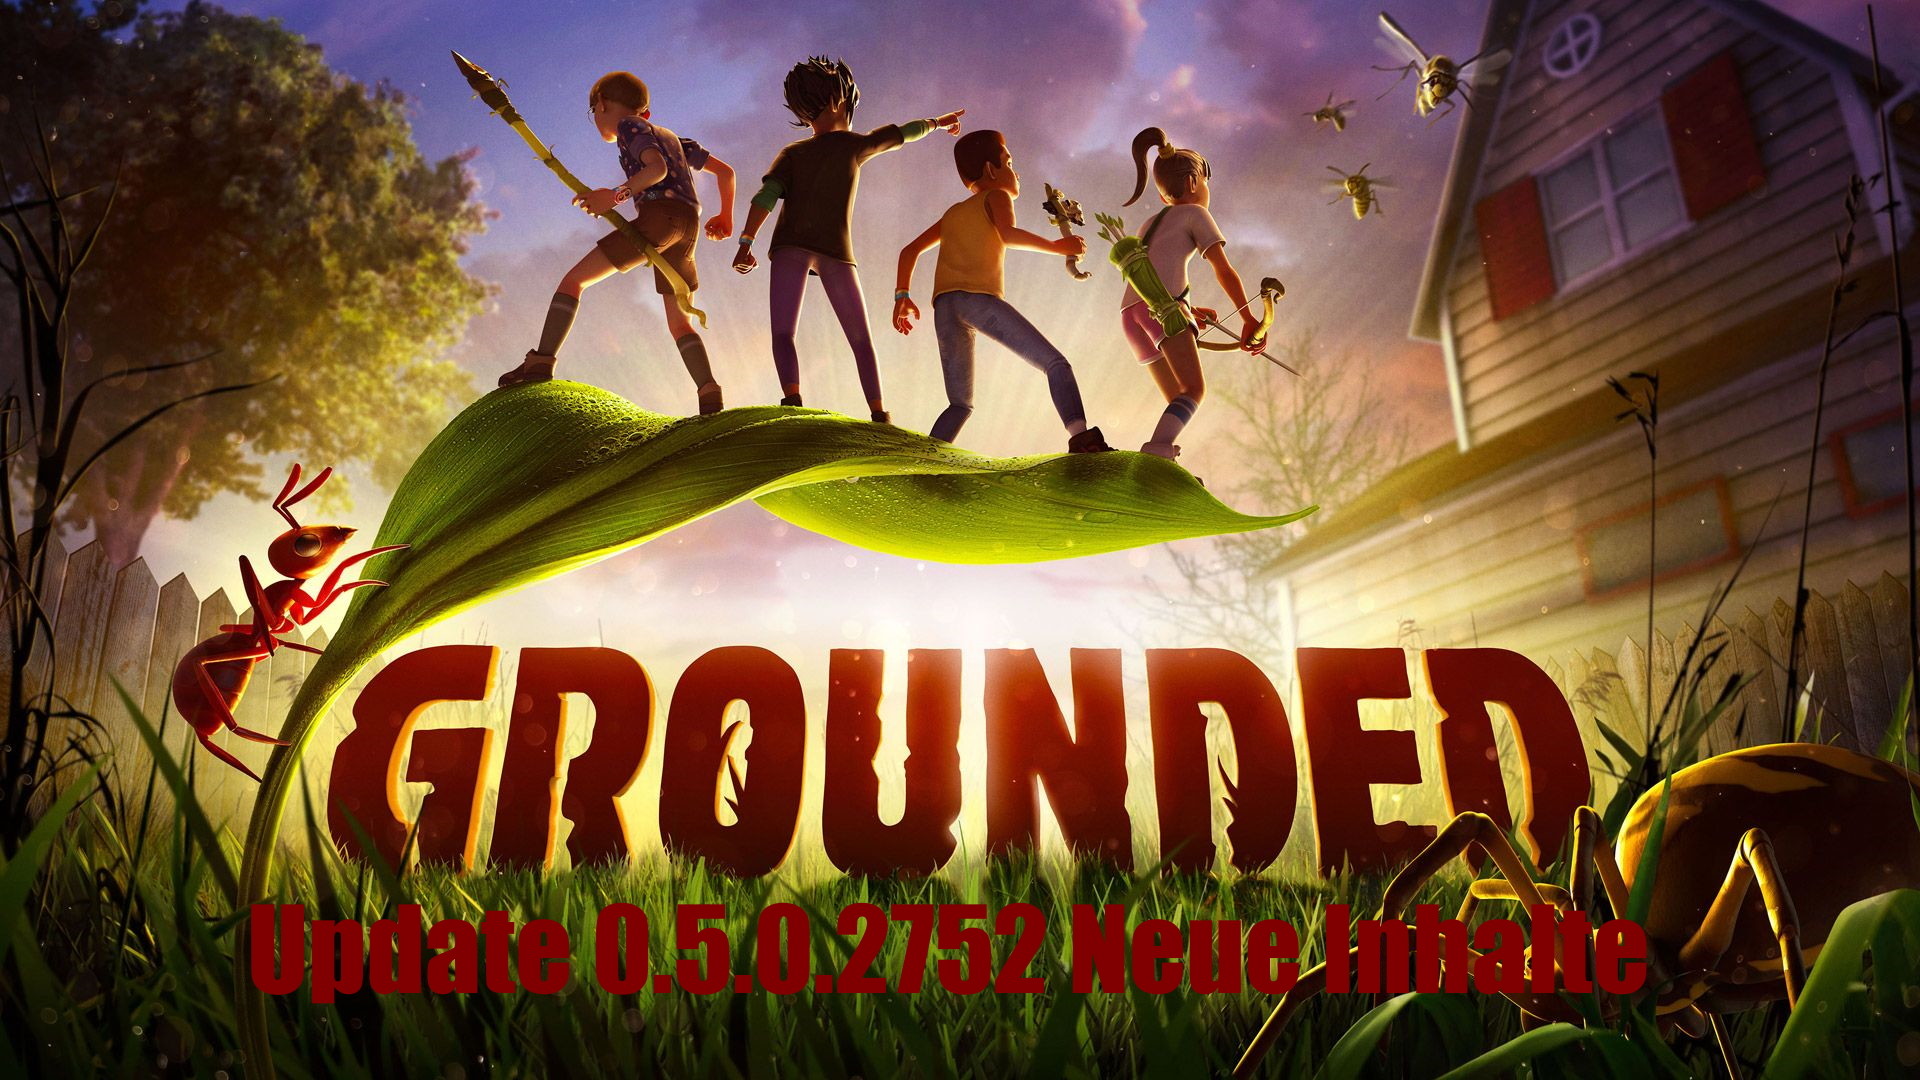 Das Grounded Update 0.5.0.2752 bringt neue Inhalte